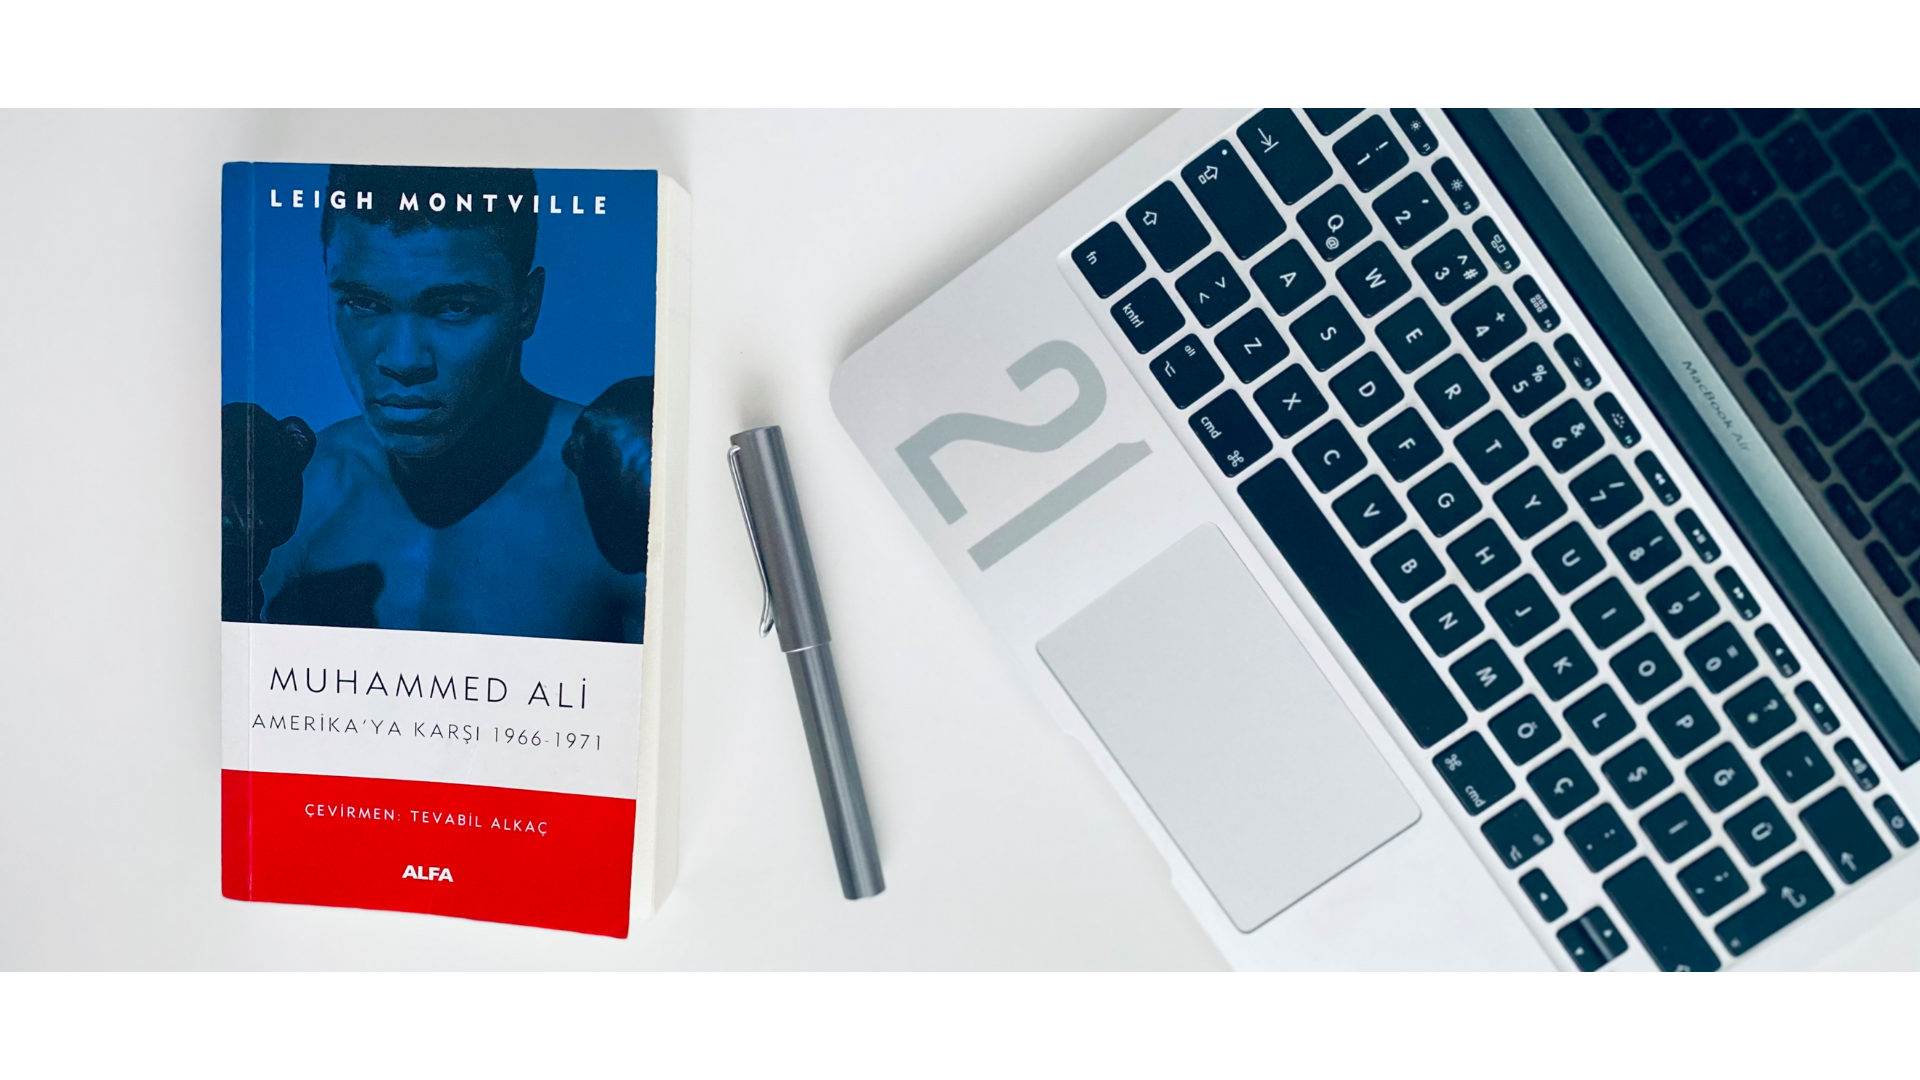 Muhammed Ali’nin En Meşhur Fotoğrafı hakkında bahseden bir kitap görseli.